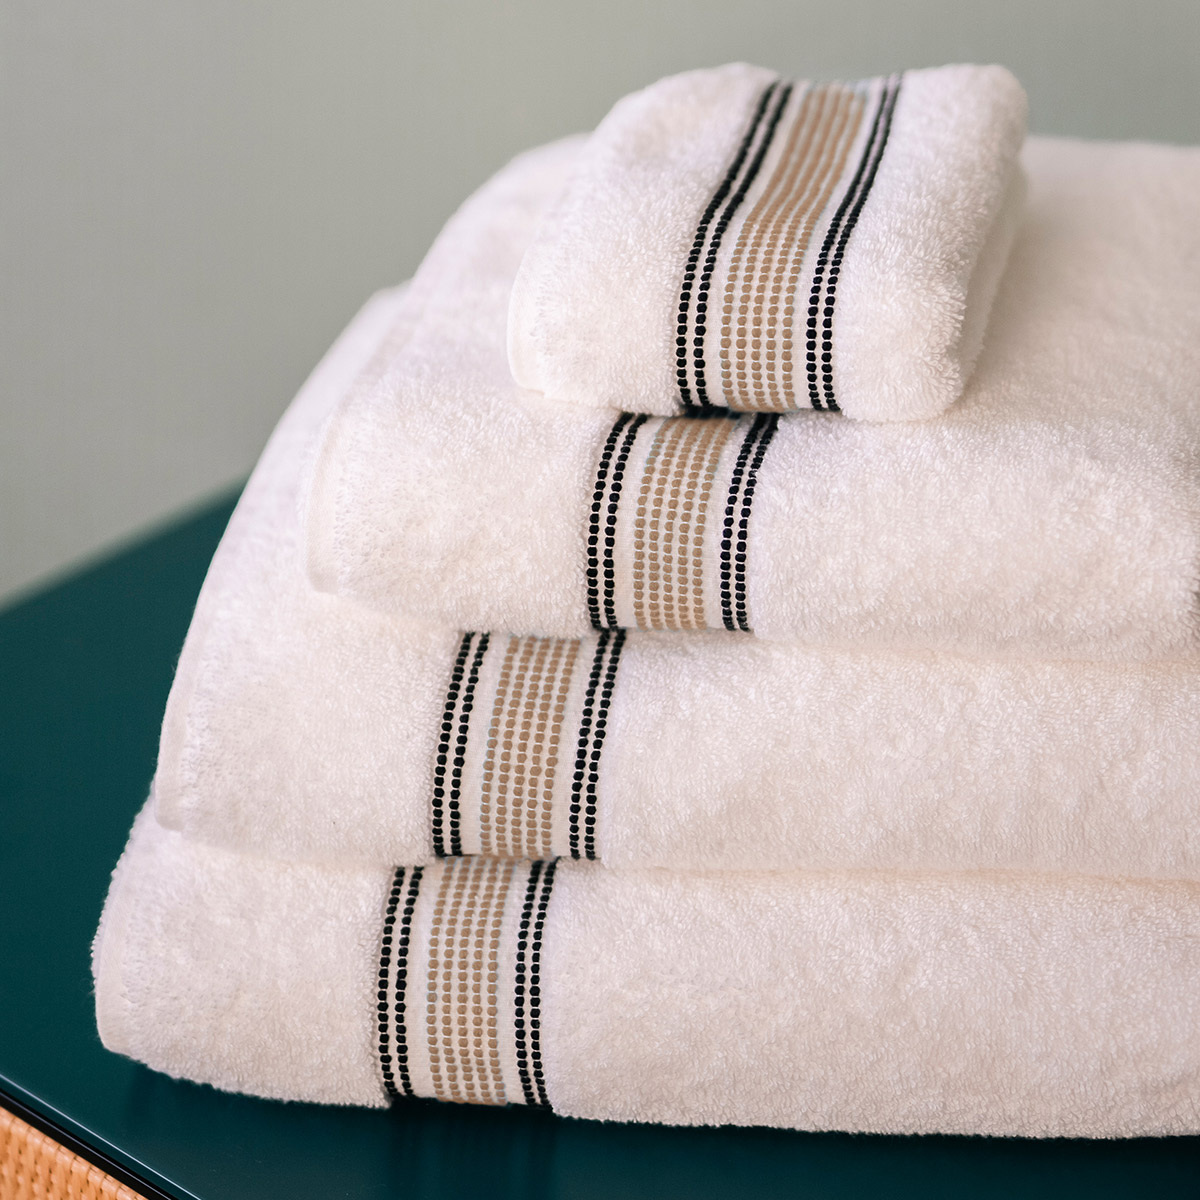 Towel Sicilia, Linen - Different sizes - Organic cotton - image 4